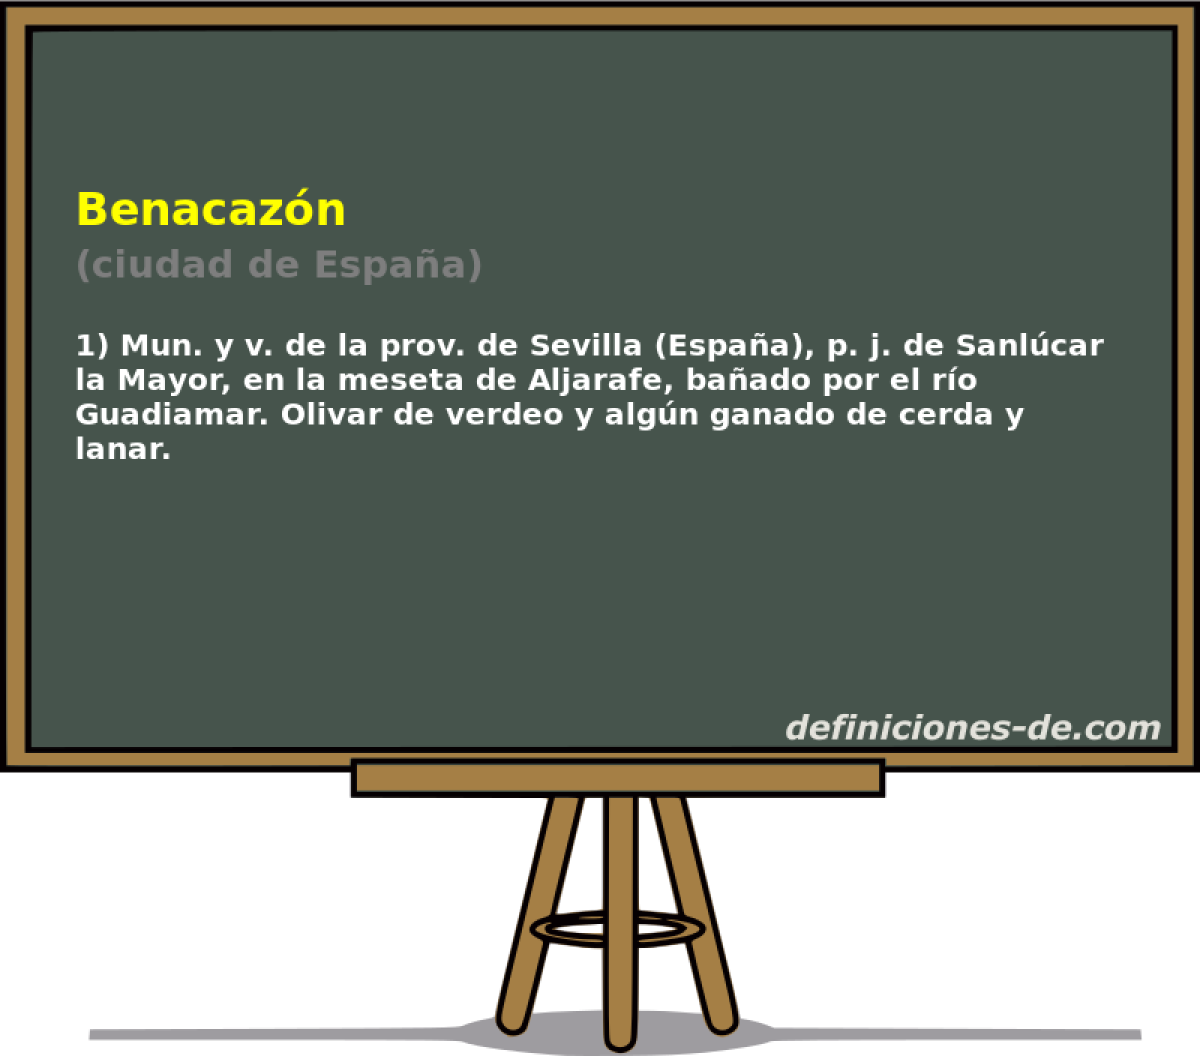 Benacazn (ciudad de Espaa)